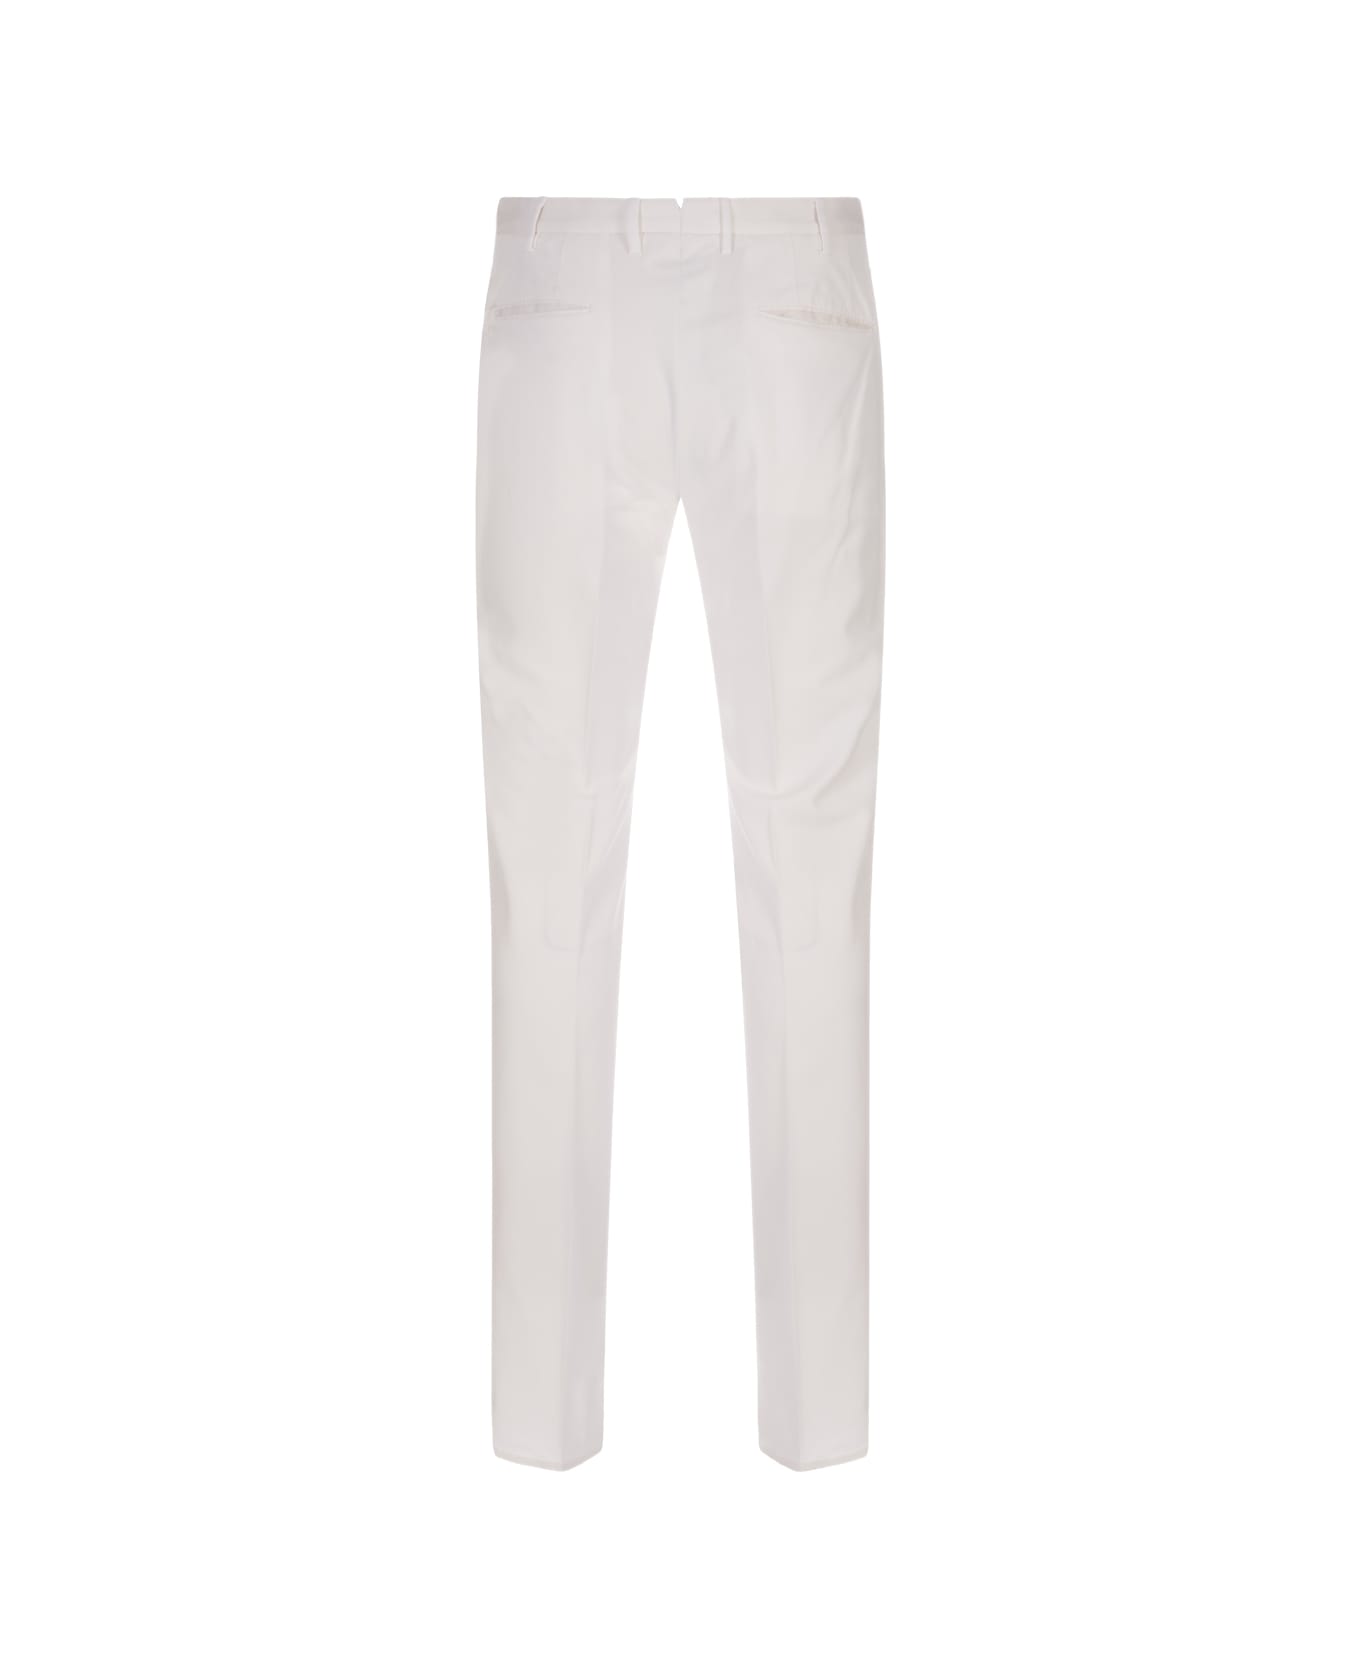 Incotex White Venezia 1951 Slim Fit Trousers